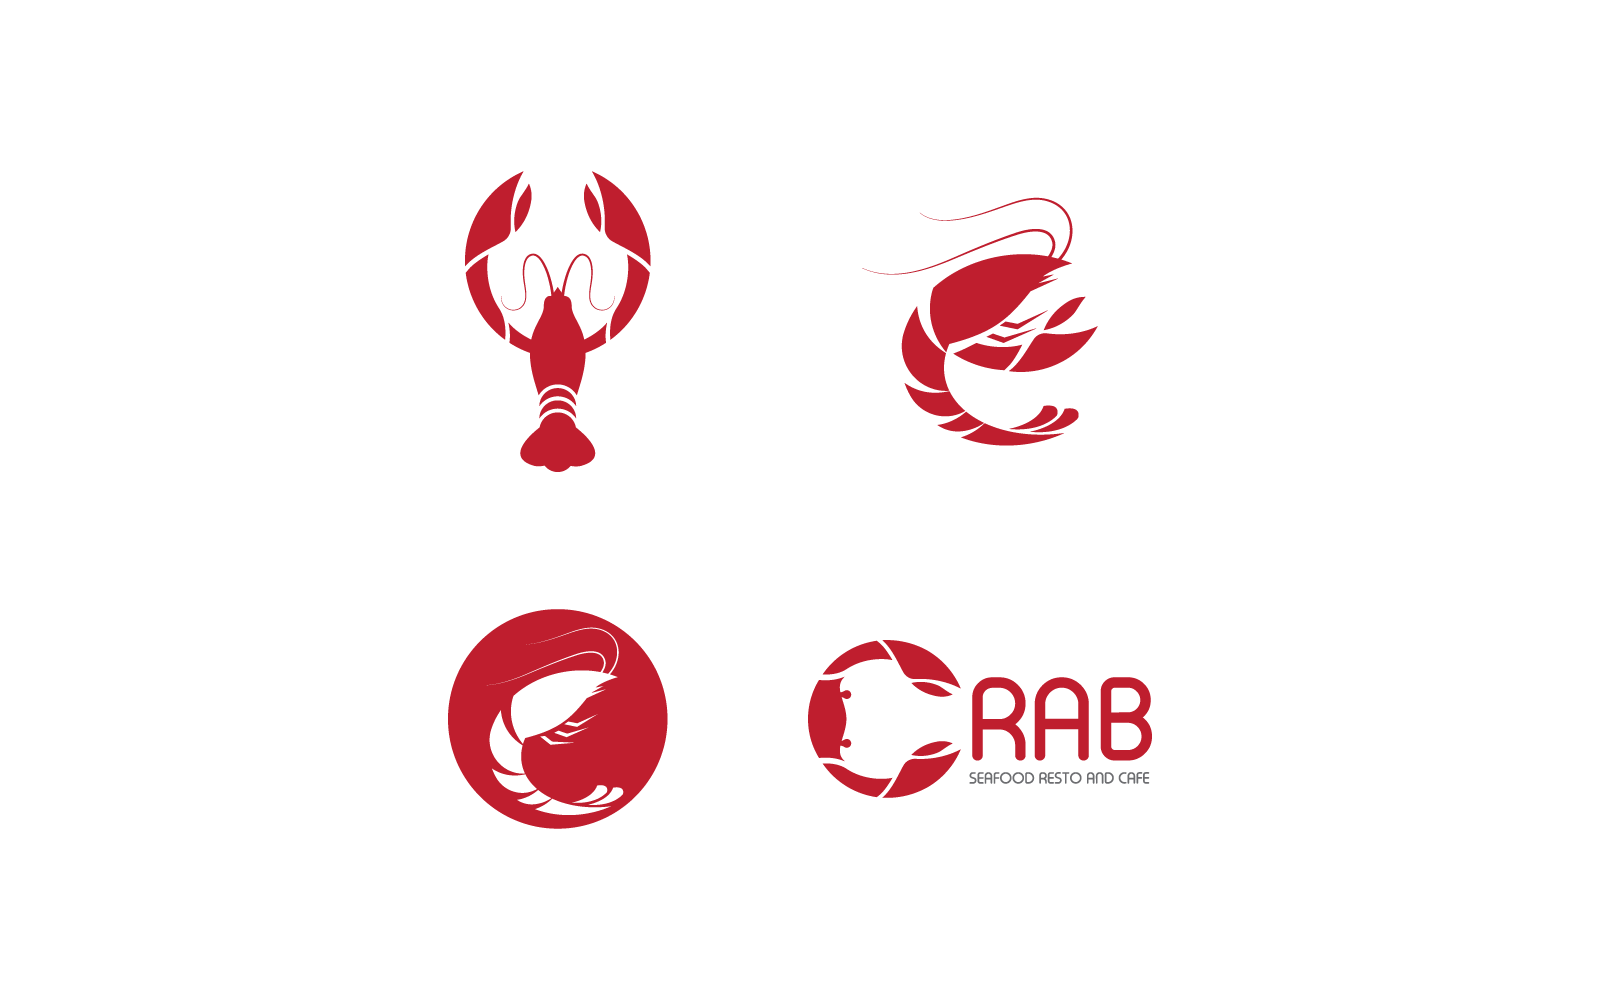 Lobster logo illustration vector flat design